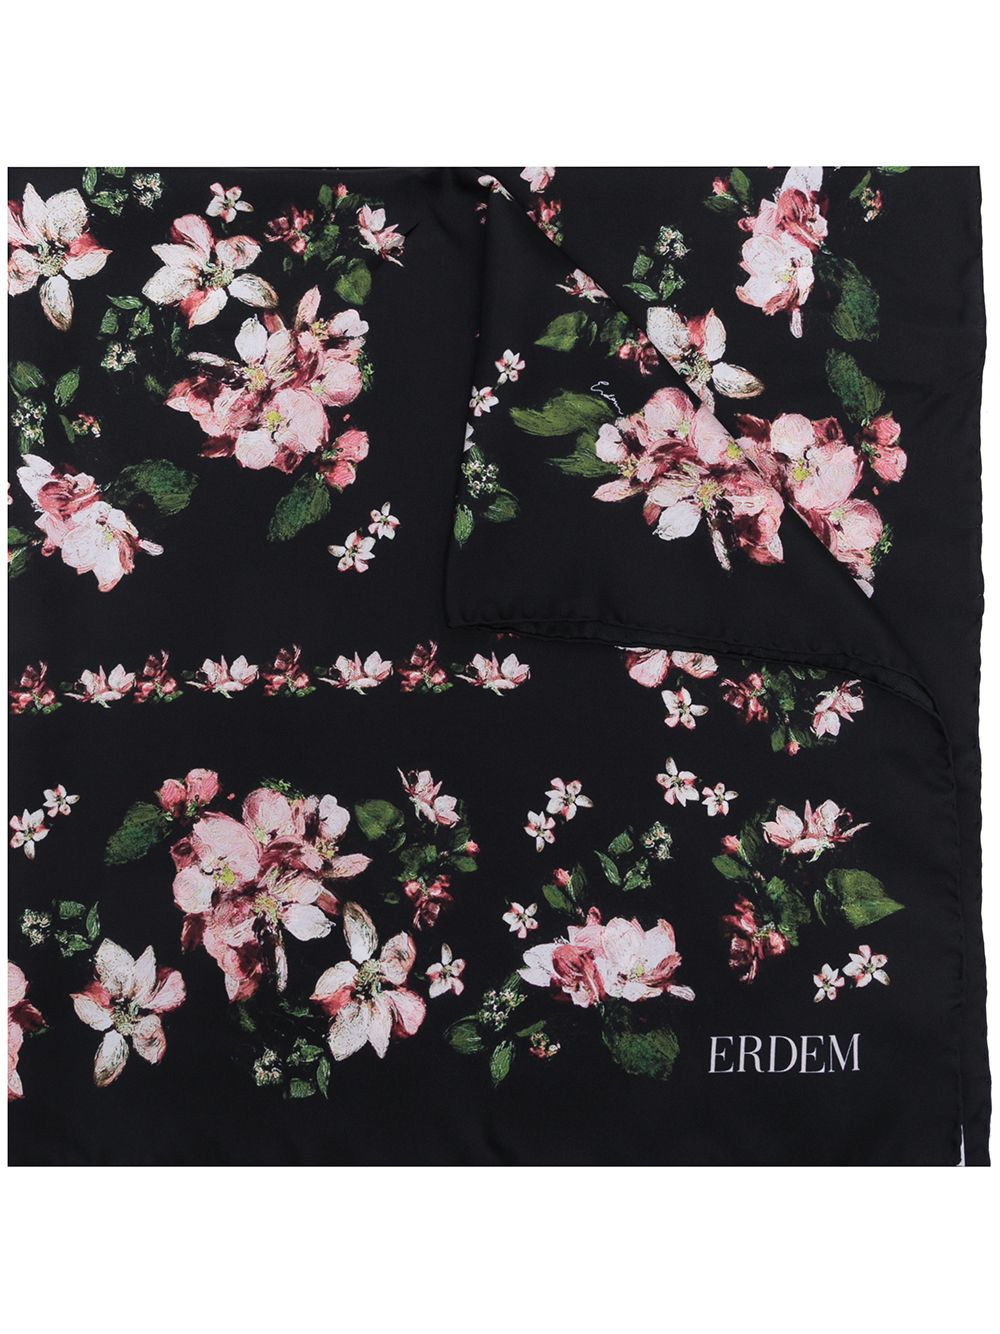 фото Erdem шелковый платок margot с цветочным принтом